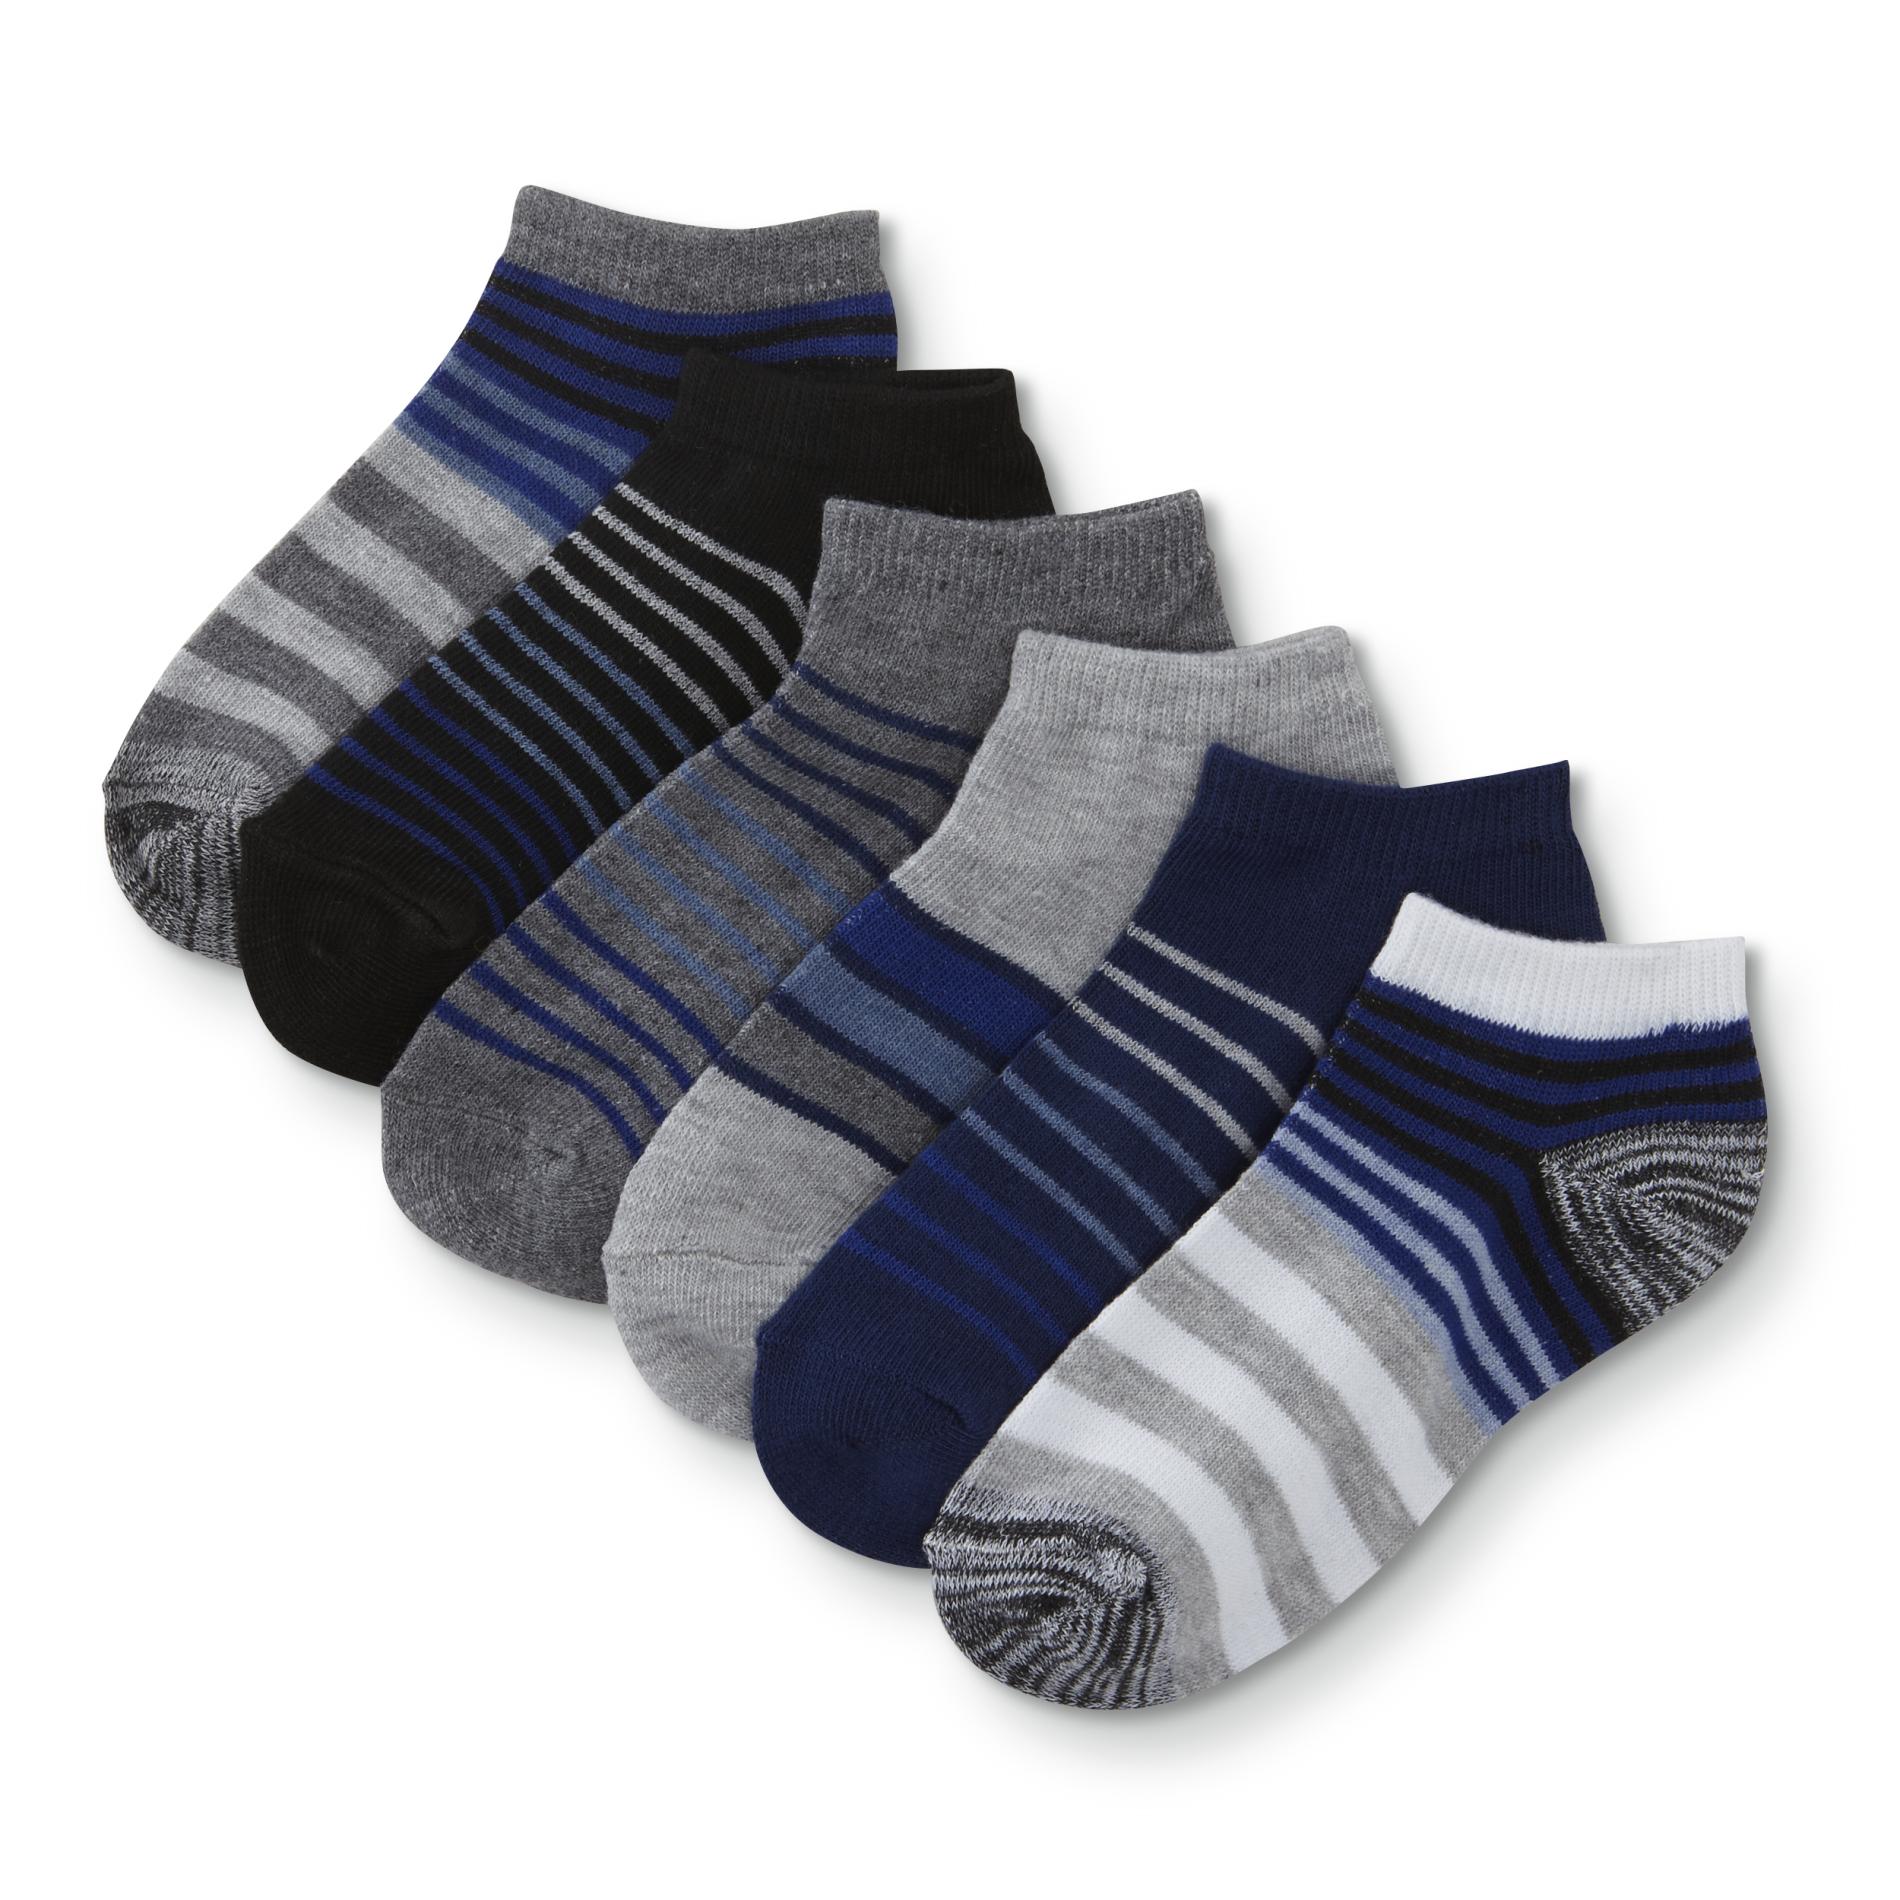 Boys' 6-Pairs No-Show Socks - Striped